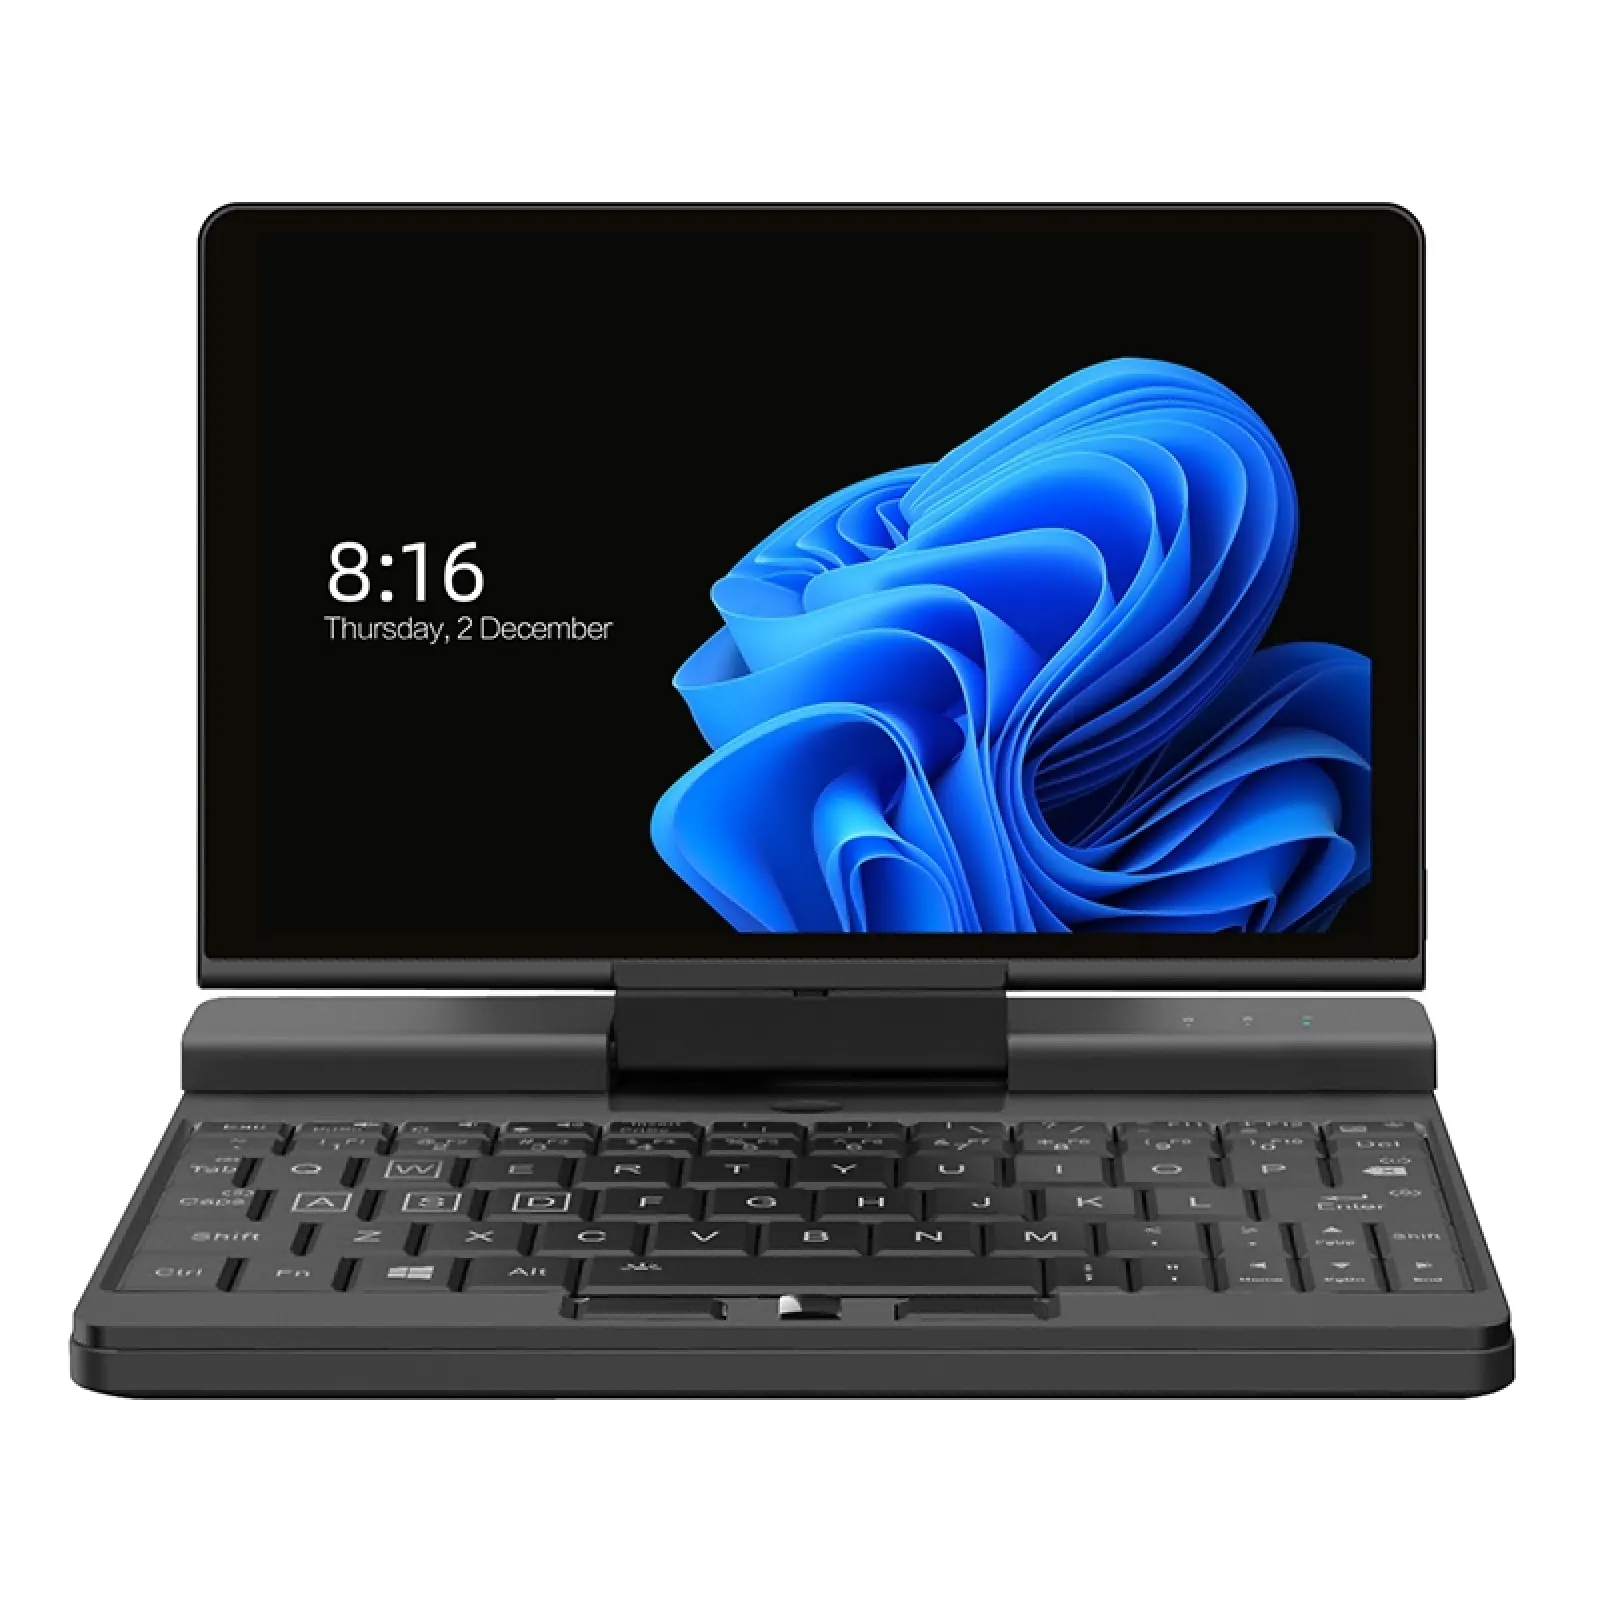 7,0 Zoll ONE-NETBOOK A1 Pro Industrial Engineer Pocket Laptop RS-232 11 16GB 512GB Fingerprint Unlock Mini Pocket Laptop gewinnen